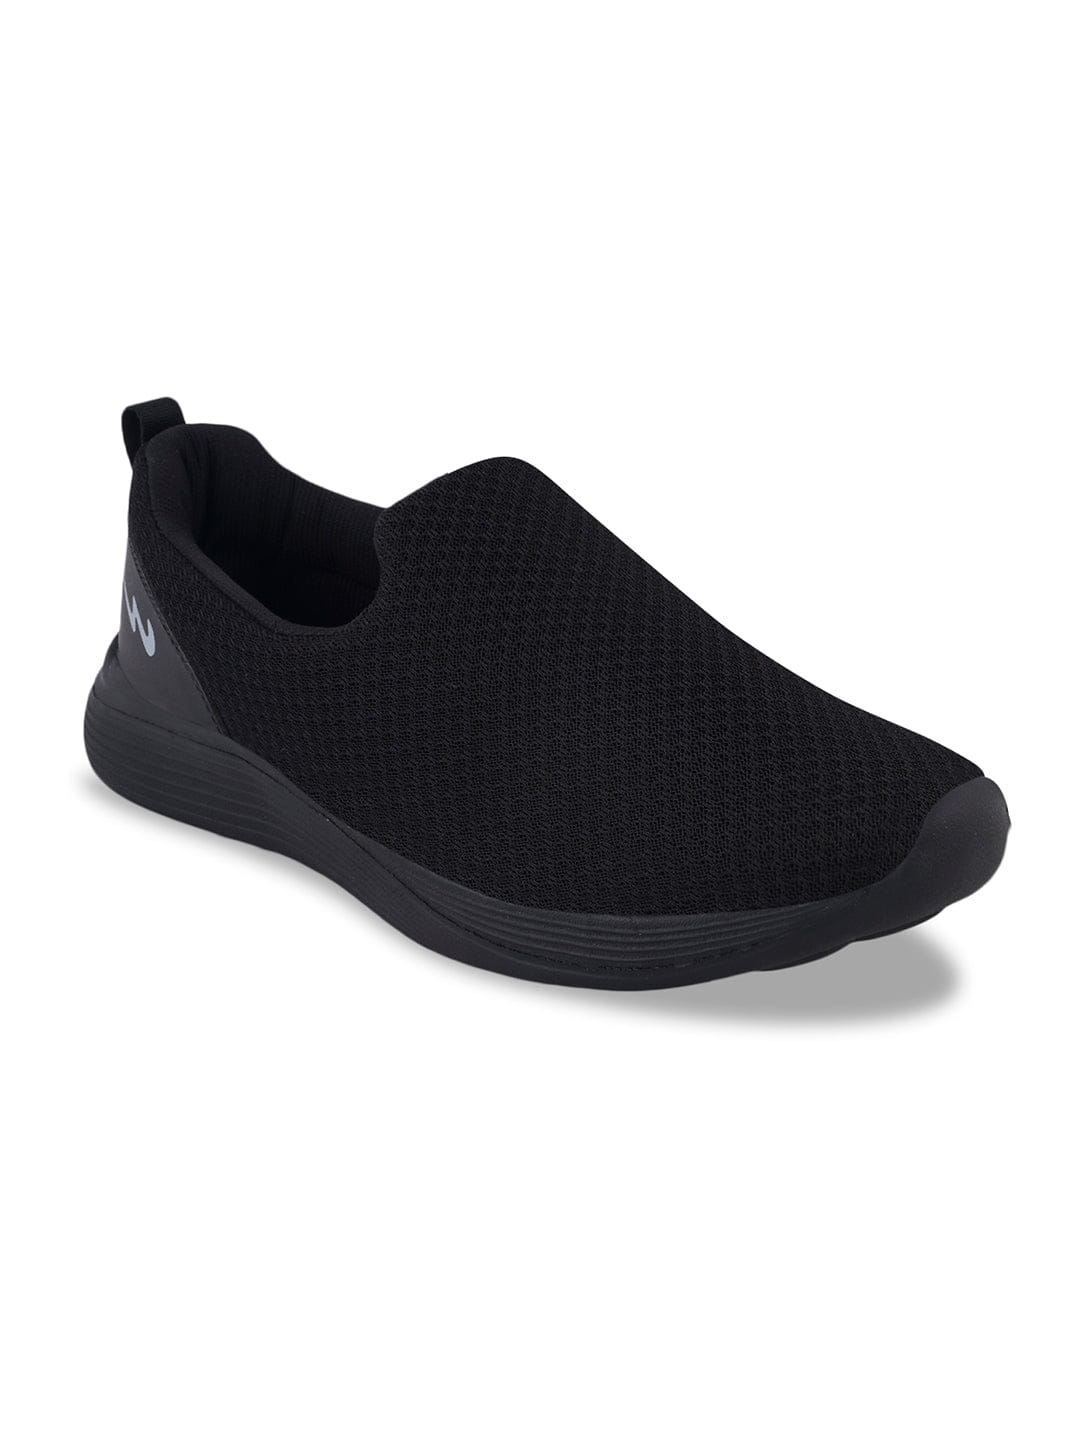 Buy SHUTTLE Black Men's Walking Shoes online | Campus Shoes